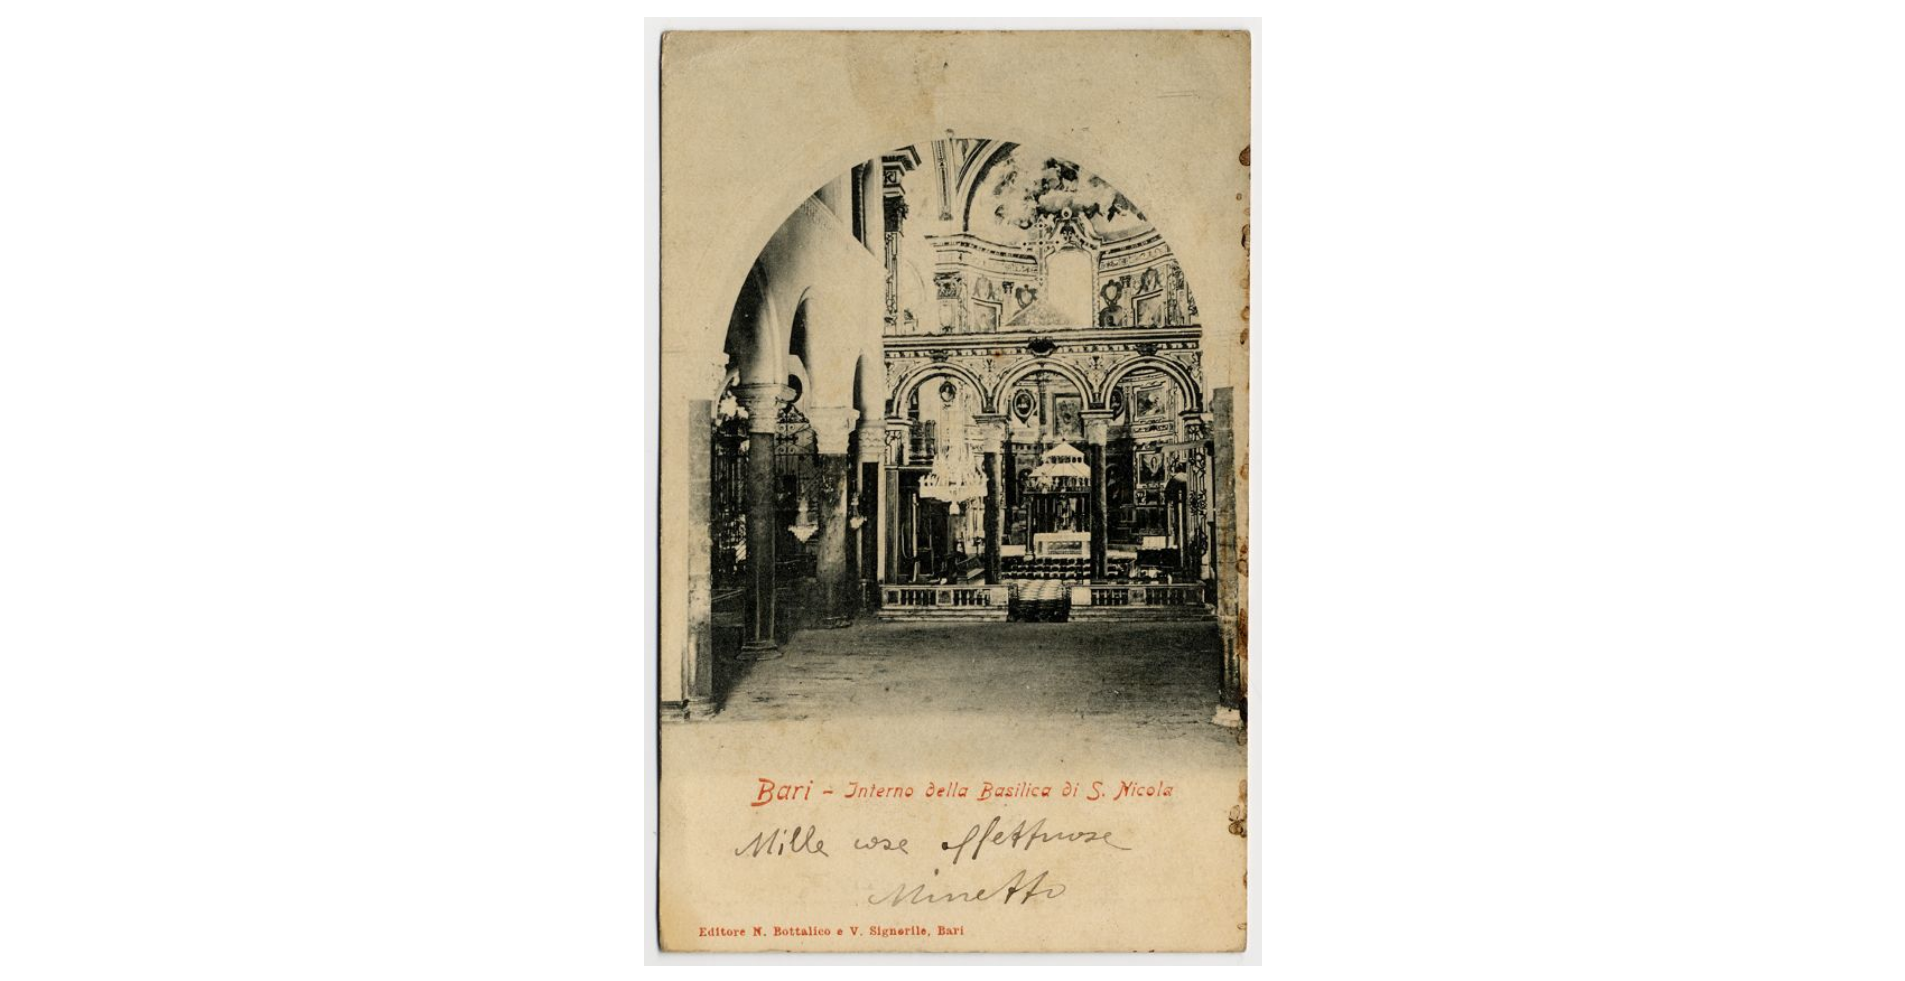 Fotografo non identificato, Bari - Basilica di S. Nicola - Interno, 1905, cartolina, FFC013999